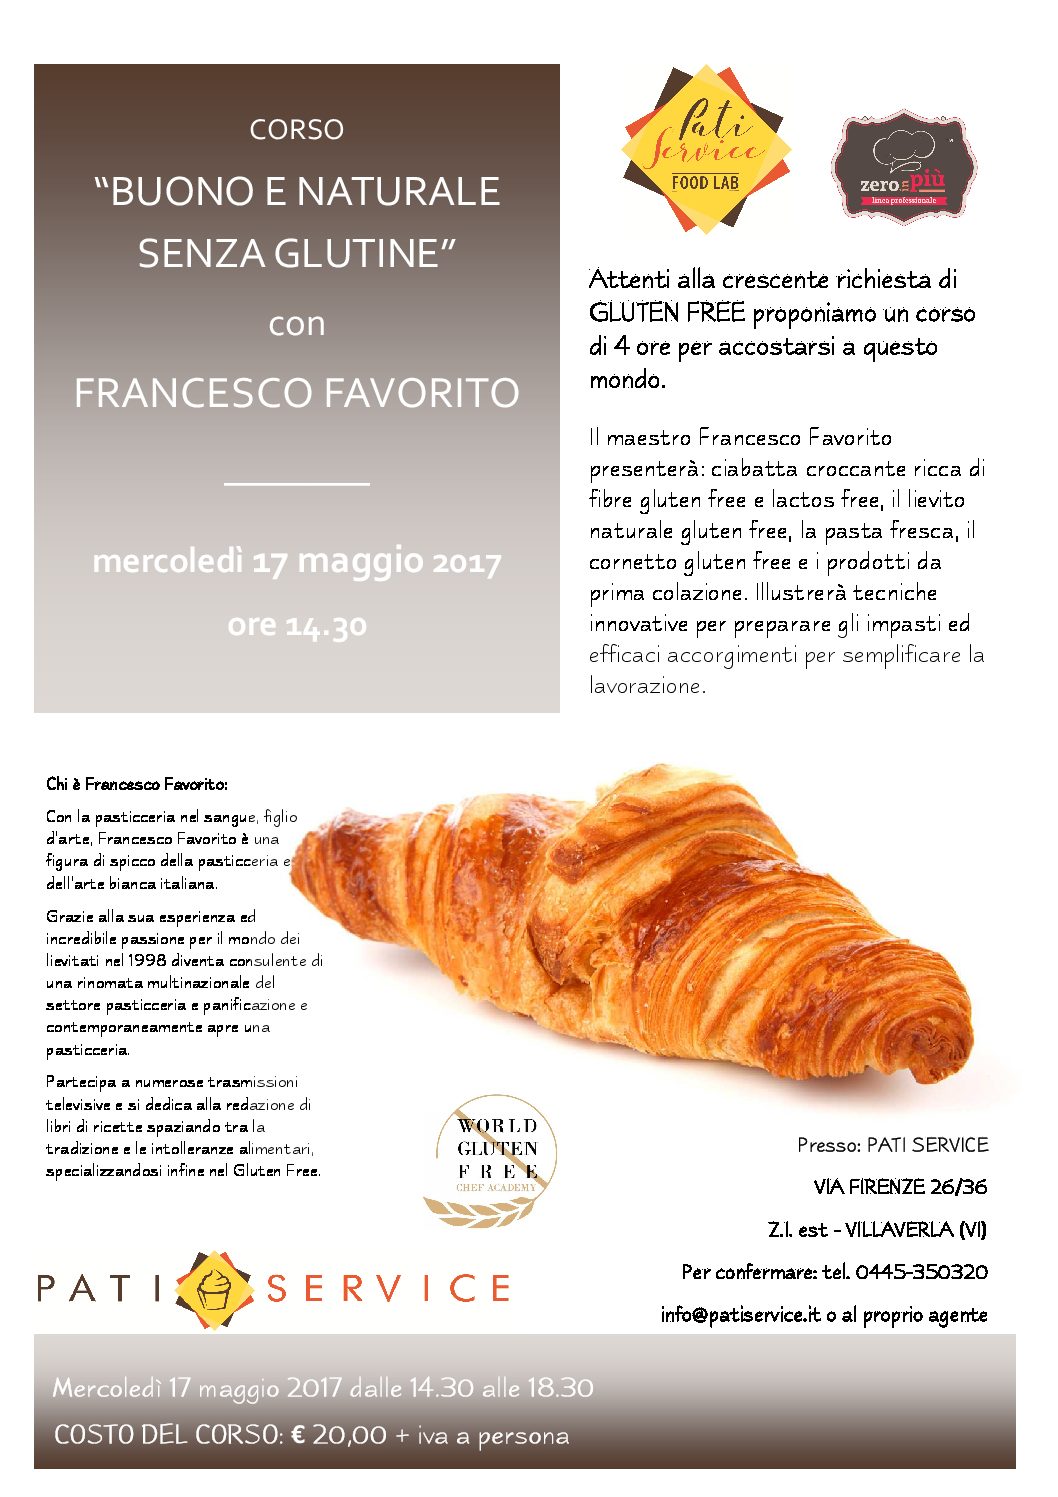 Gluten free BUONO E NATURALE SENZA GLUTINE / 17 MAGGIO 2017 A VILLAVERLA  - Corsi & Eventi - Francesco Favorito